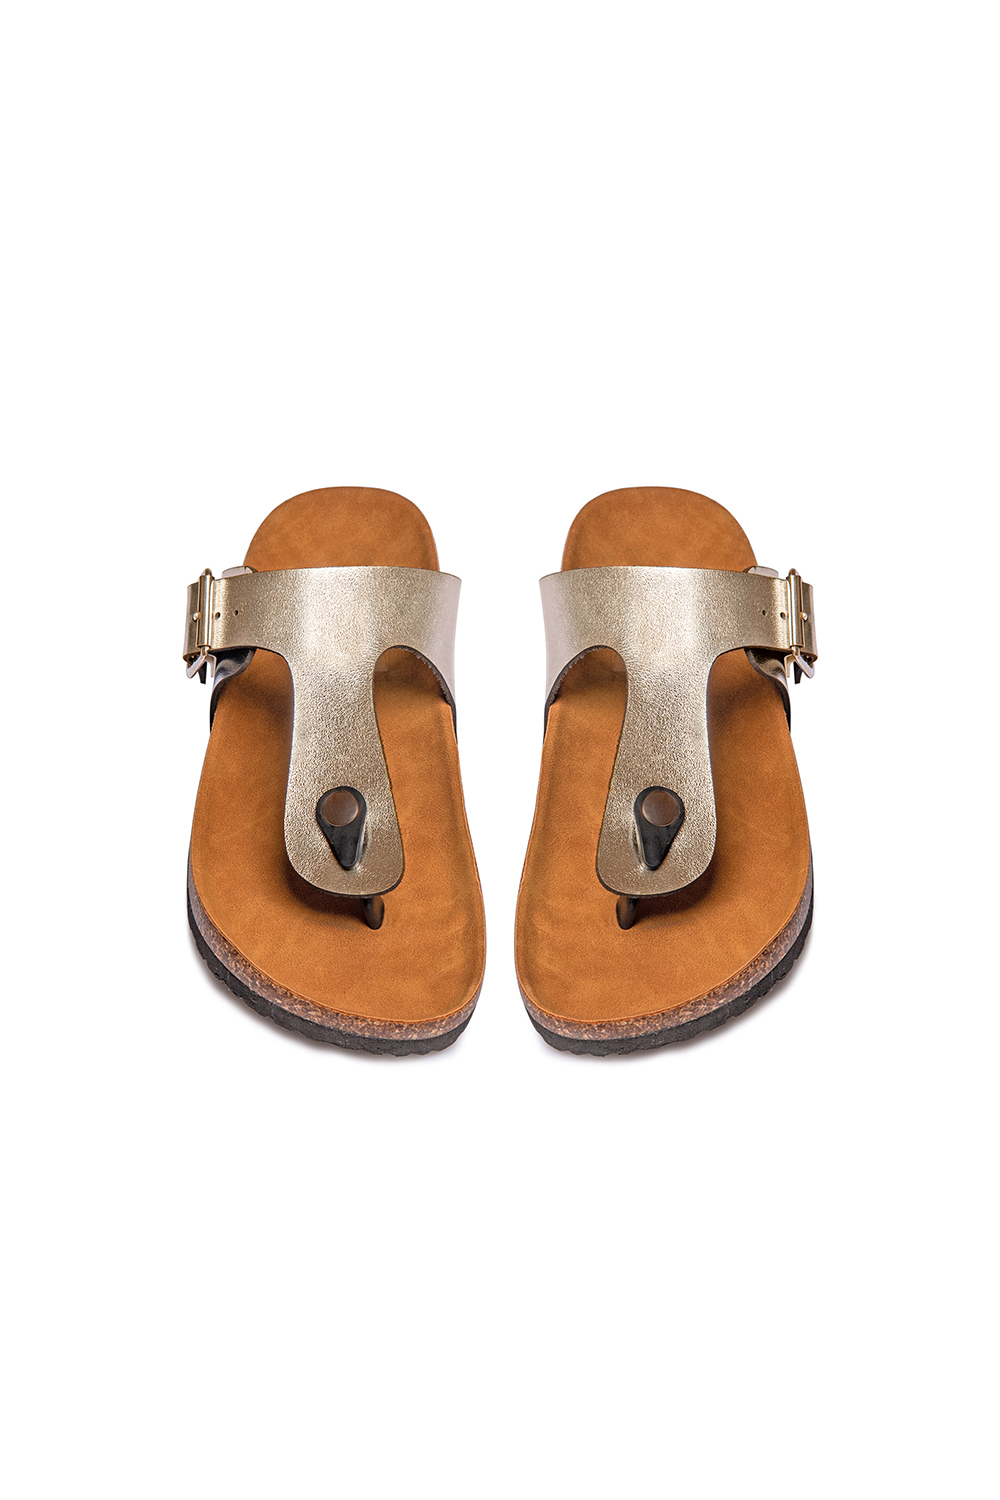 미국 양말 애리조나 새로운 여름 해변 코르크 슬리퍼 슬리퍼 샌들 여성 혼합 색상 캐주얼 슬라이드 신발 플랫 무료 배송 슬리퍼 EUR 34 ~ 46 플립